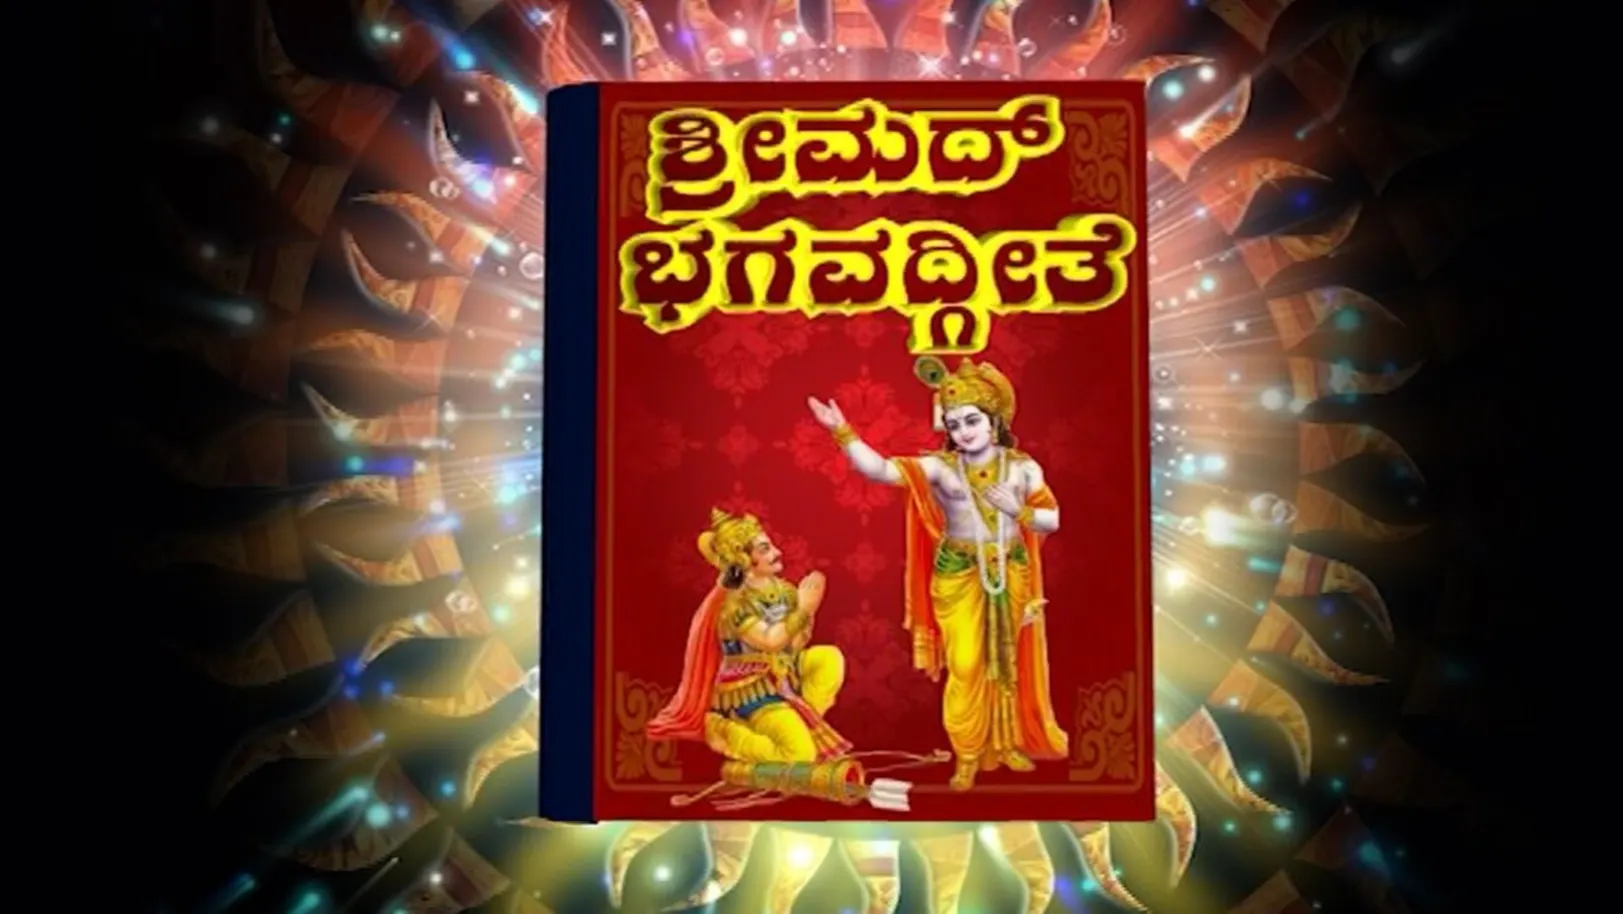 Srimad Bagavathgeethe Streaming Now On Aastha Kannada